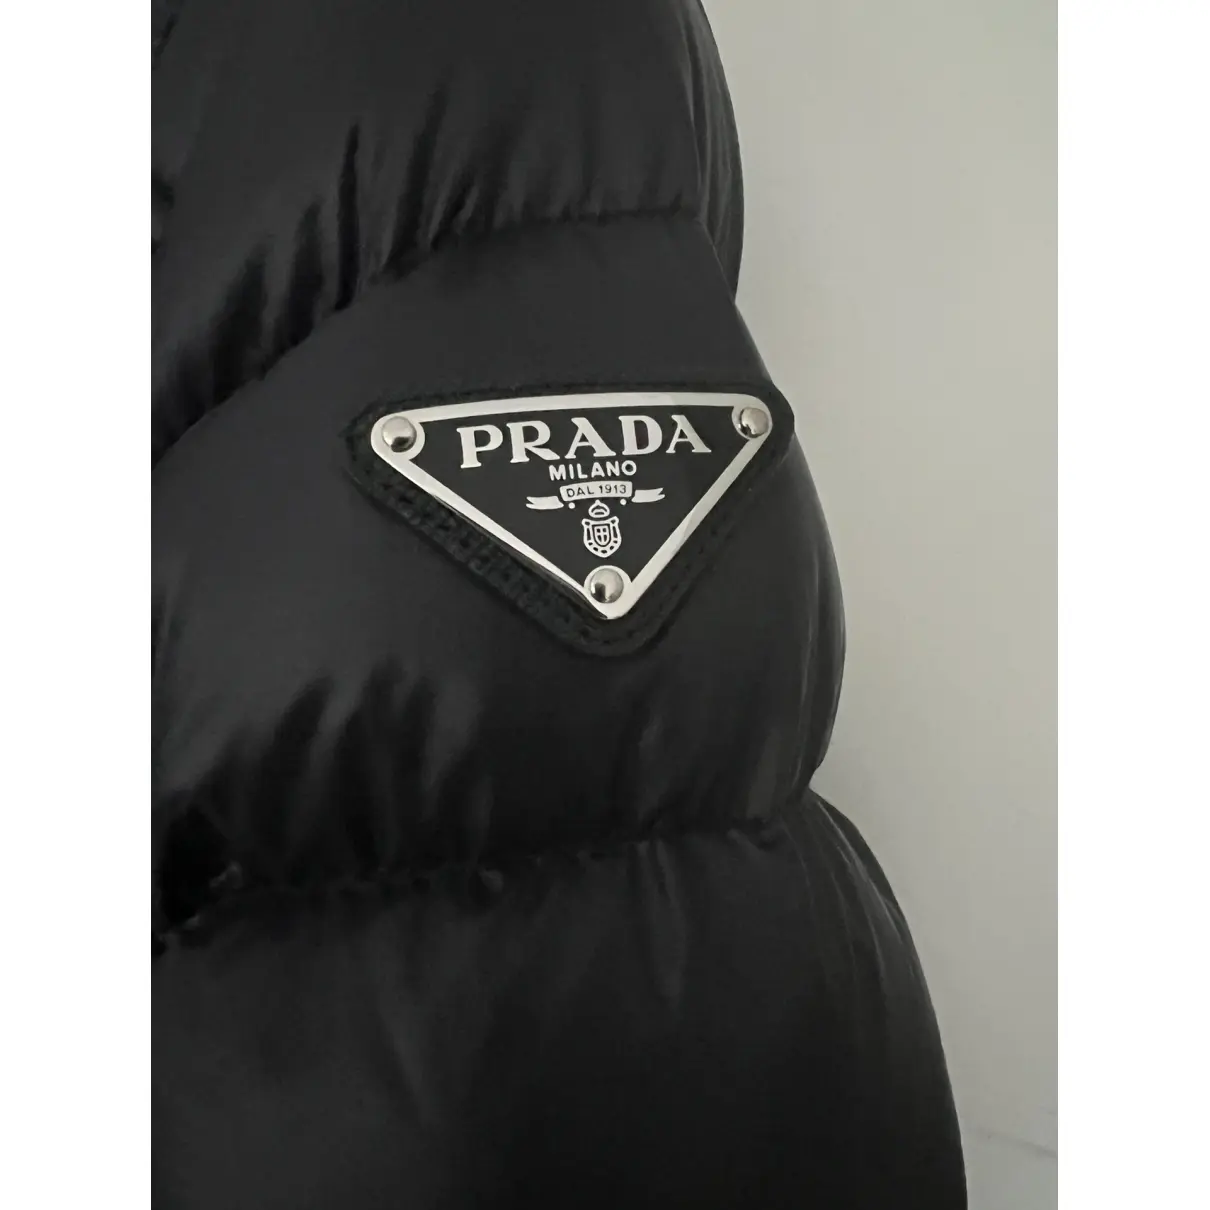 Buy Prada Puffer online